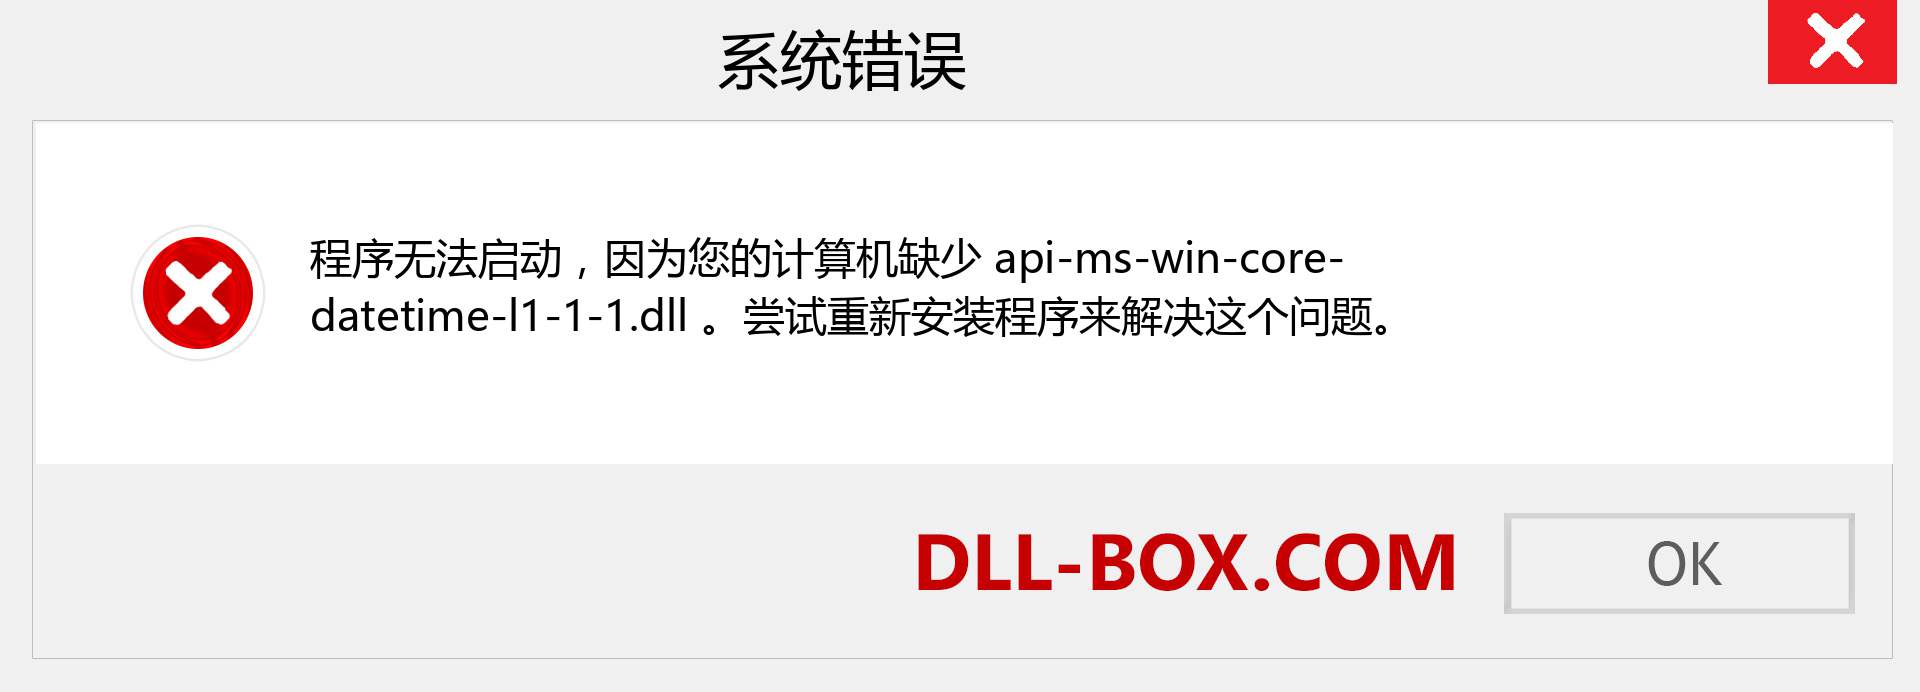 api-ms-win-core-datetime-l1-1-1.dll 文件丢失？。 适用于 Windows 7、8、10 的下载 - 修复 Windows、照片、图像上的 api-ms-win-core-datetime-l1-1-1 dll 丢失错误